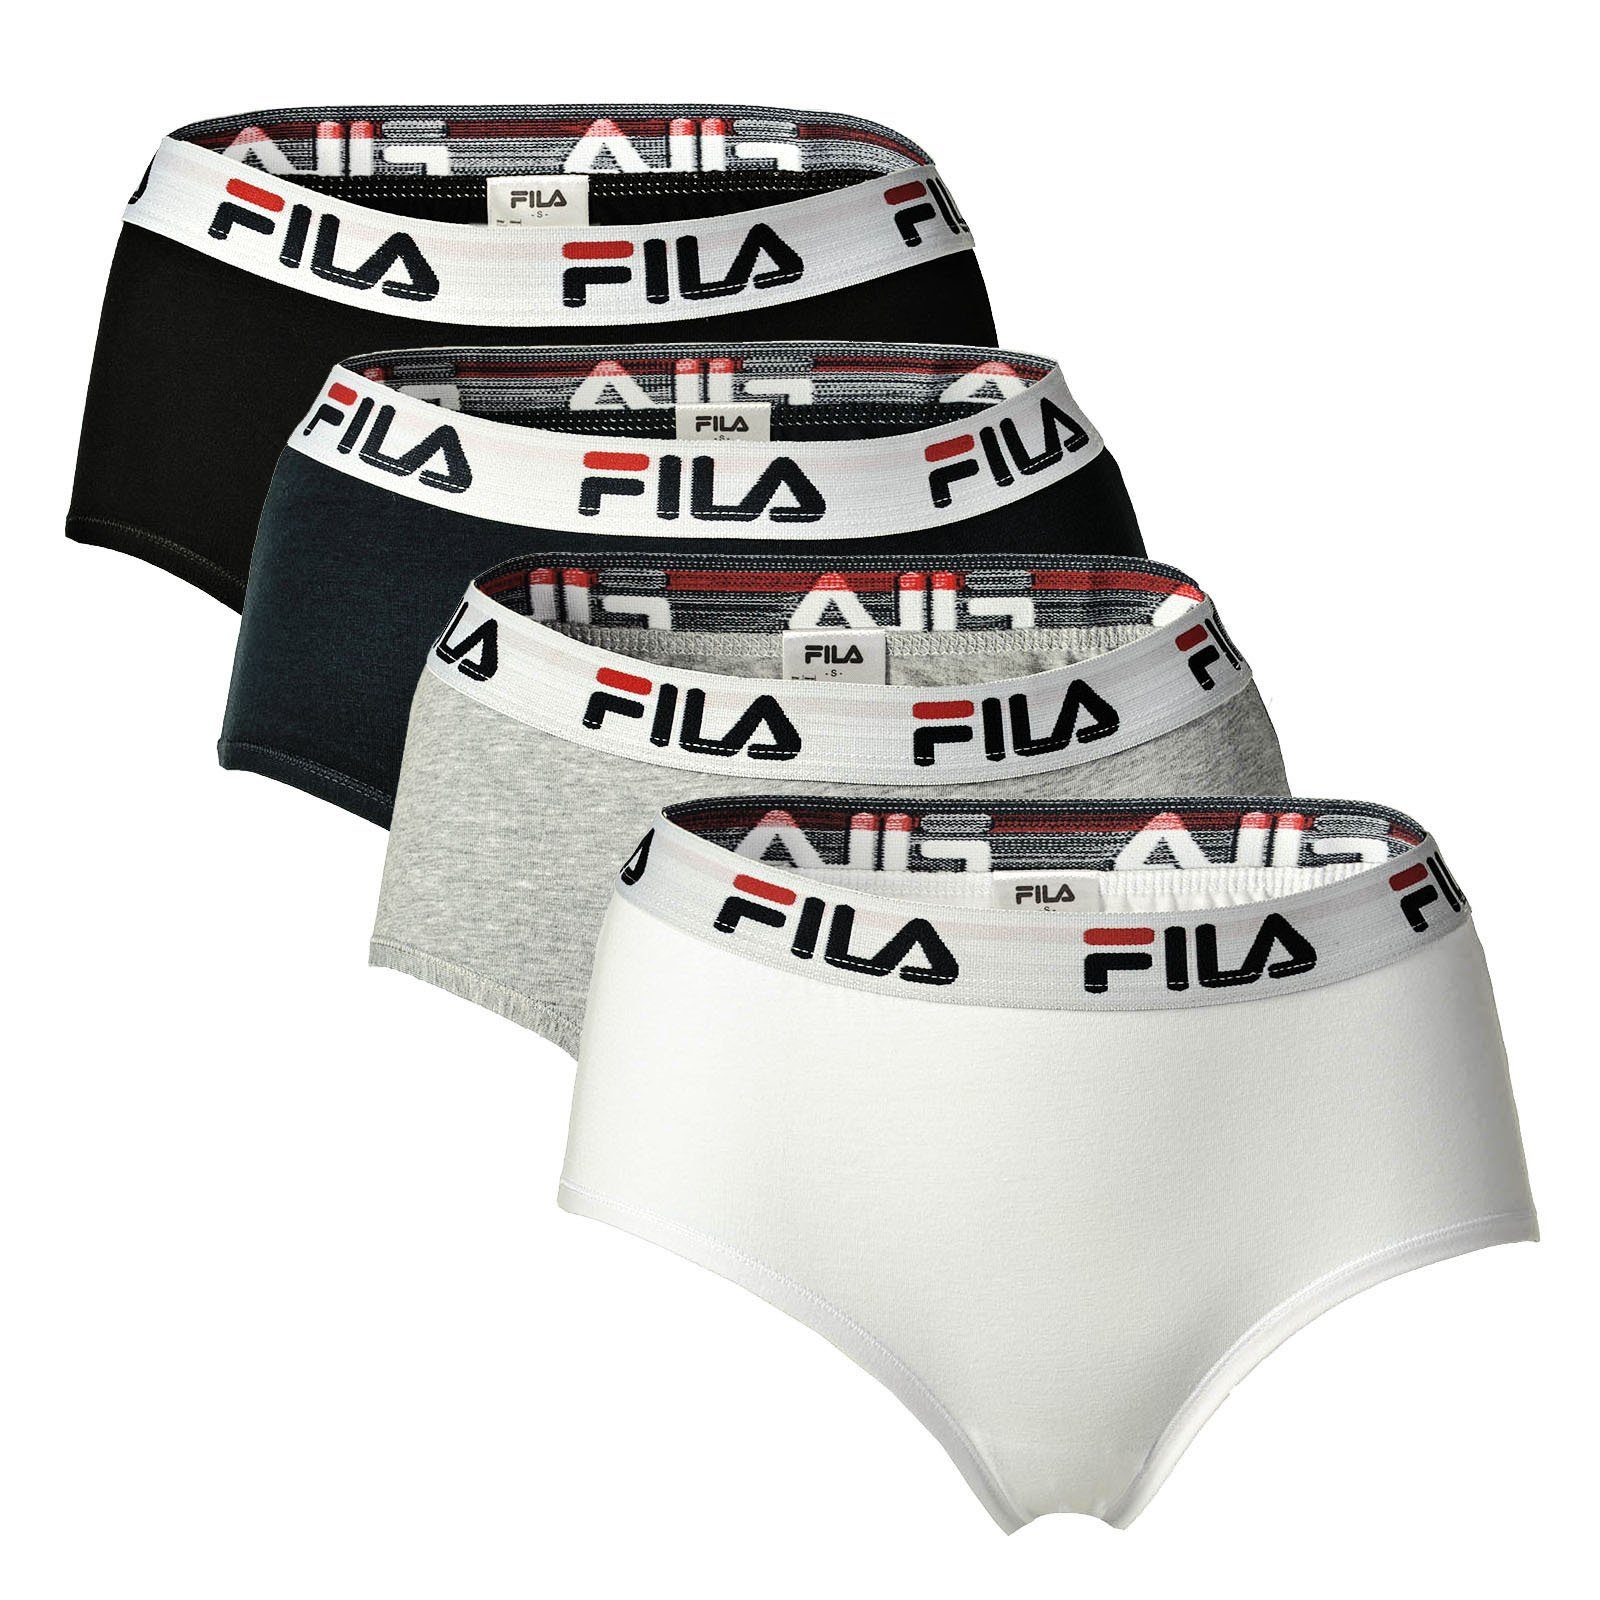 Fila Panty Damen Hipster - 4er Pack Slip, Logo-Bund, Cotton Weiß/Schwarz/Grau/Marine